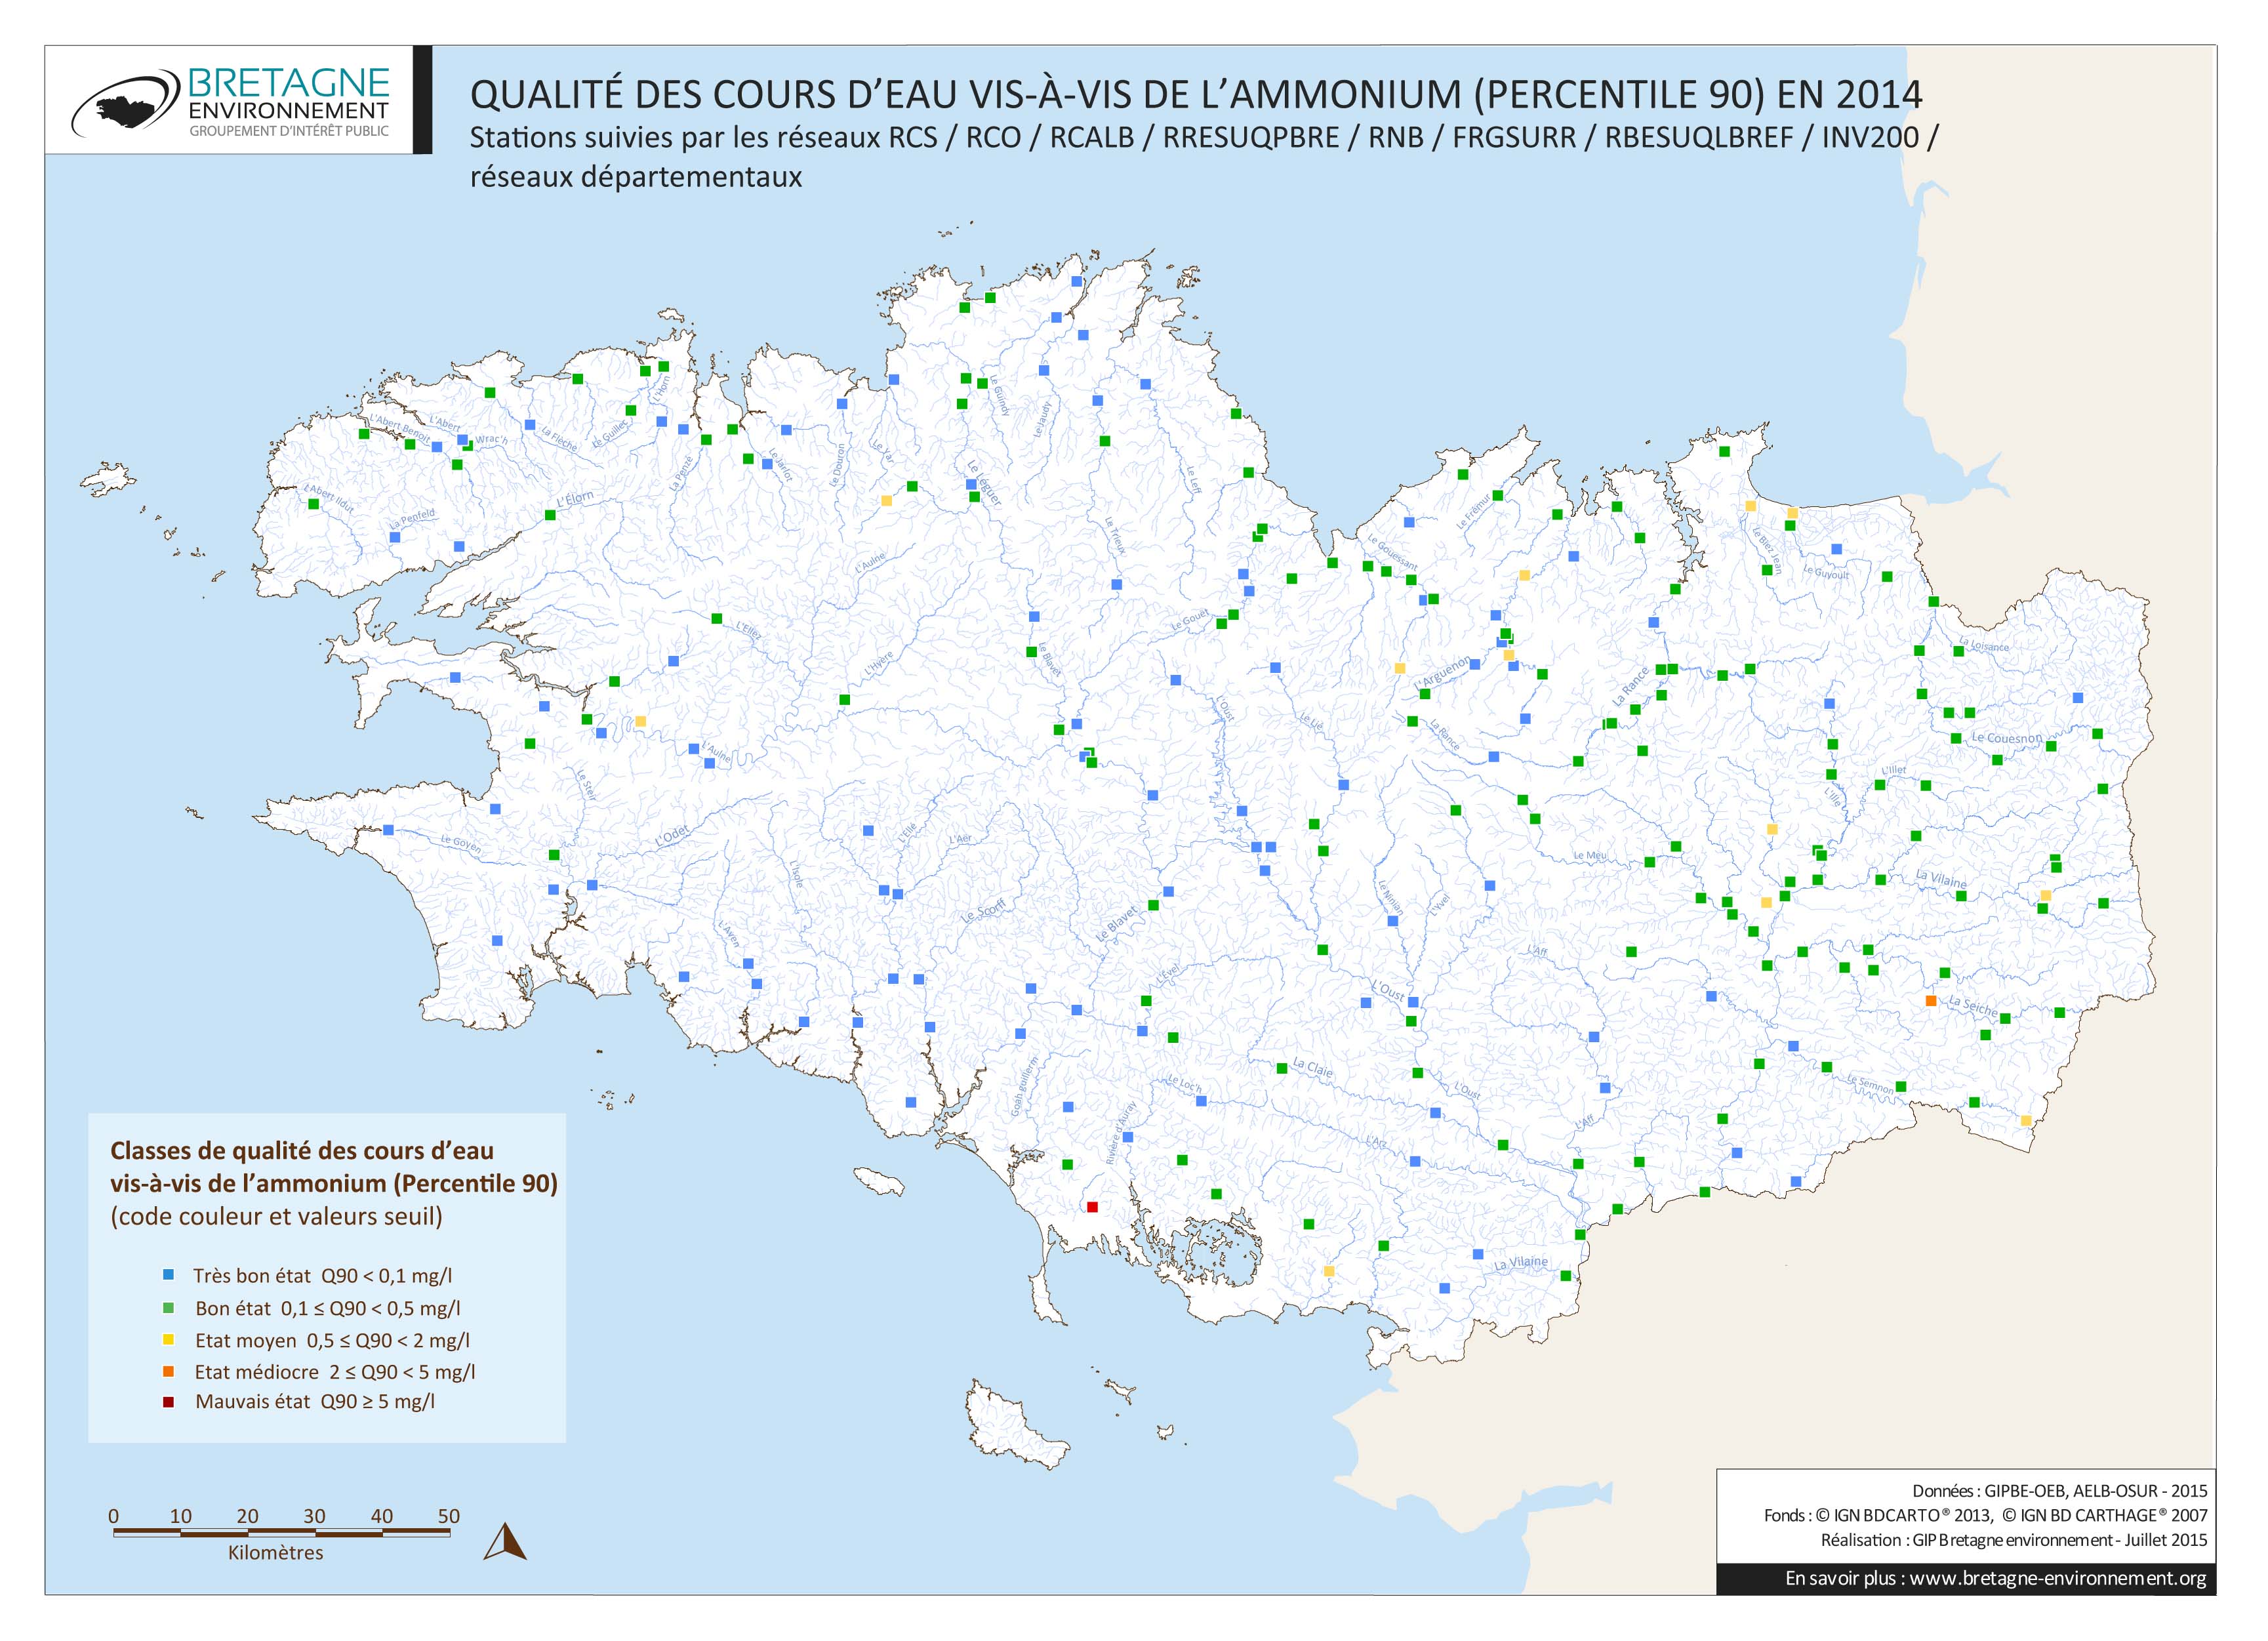 Qualité des cours d'eau bretons vis-à-vis de l'ammonium (Q90) en 2014